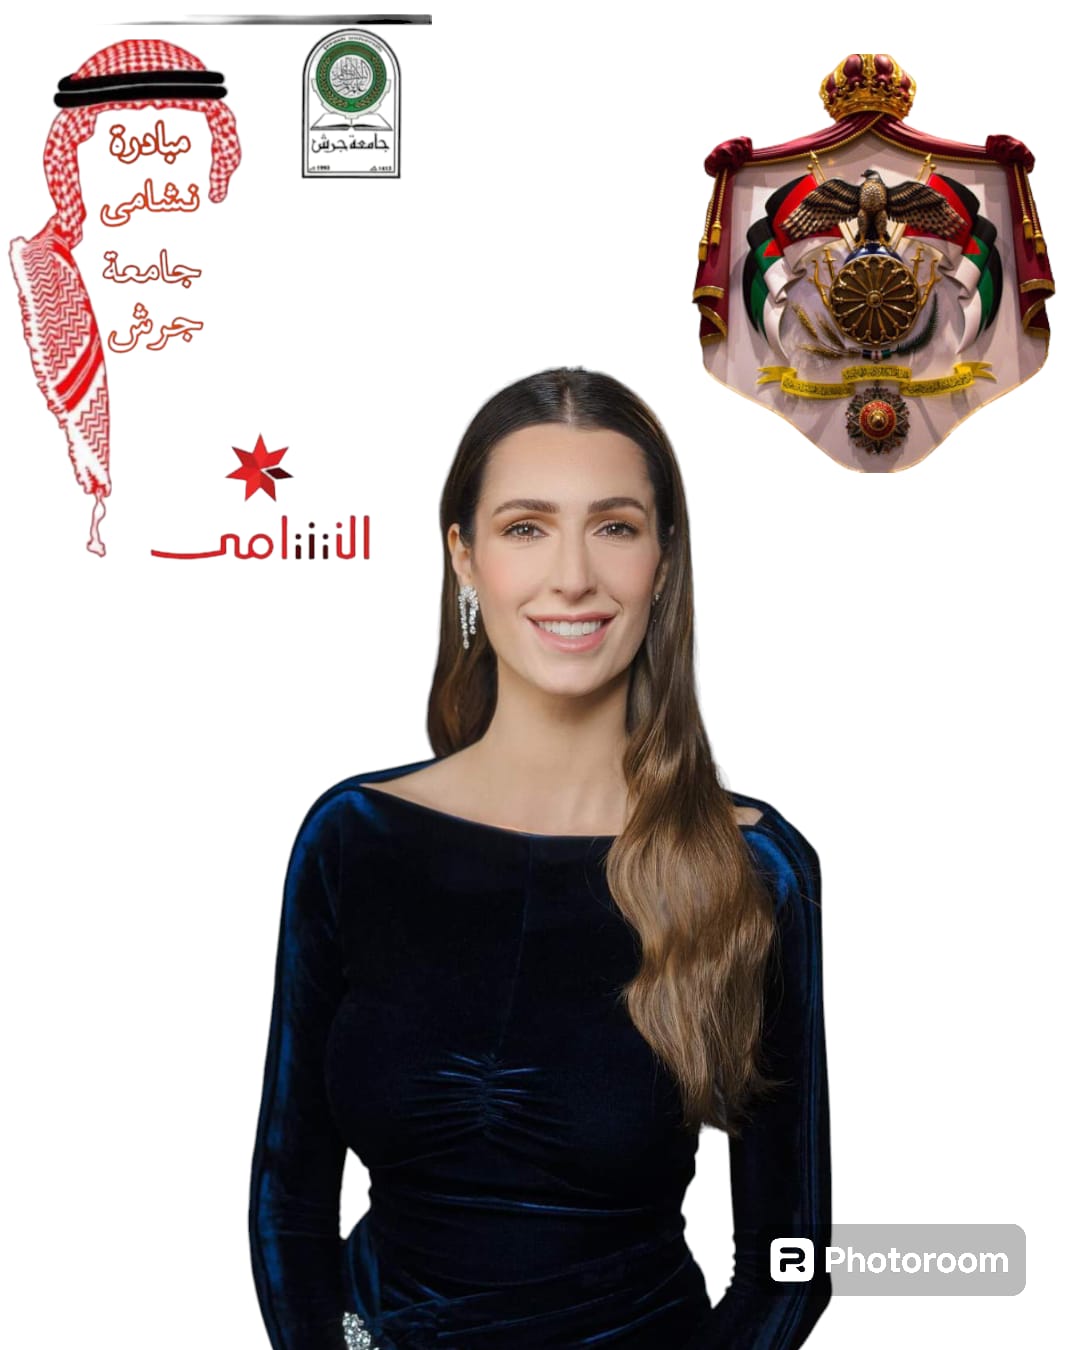 مبادرة النشامى في جامعة جرش تهنئ سمو الأميرة رجوة الحسين بعيد ميلادها الميمون